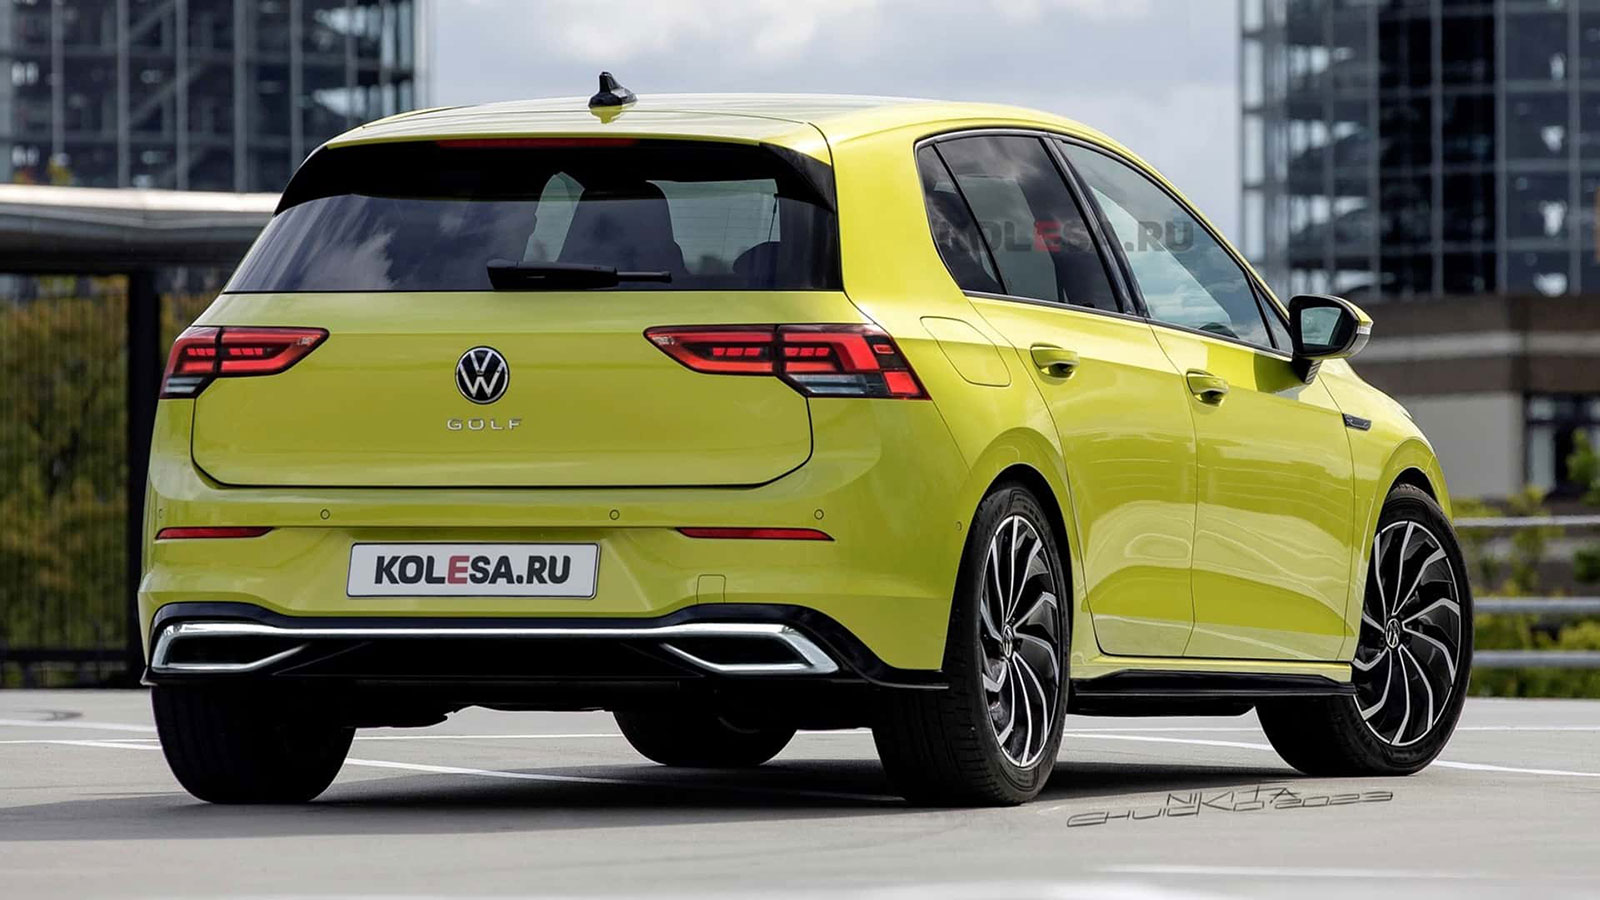 Σχέδια παρουσιάζουν ανεπίσημα το ανανεωμένο VW Golf